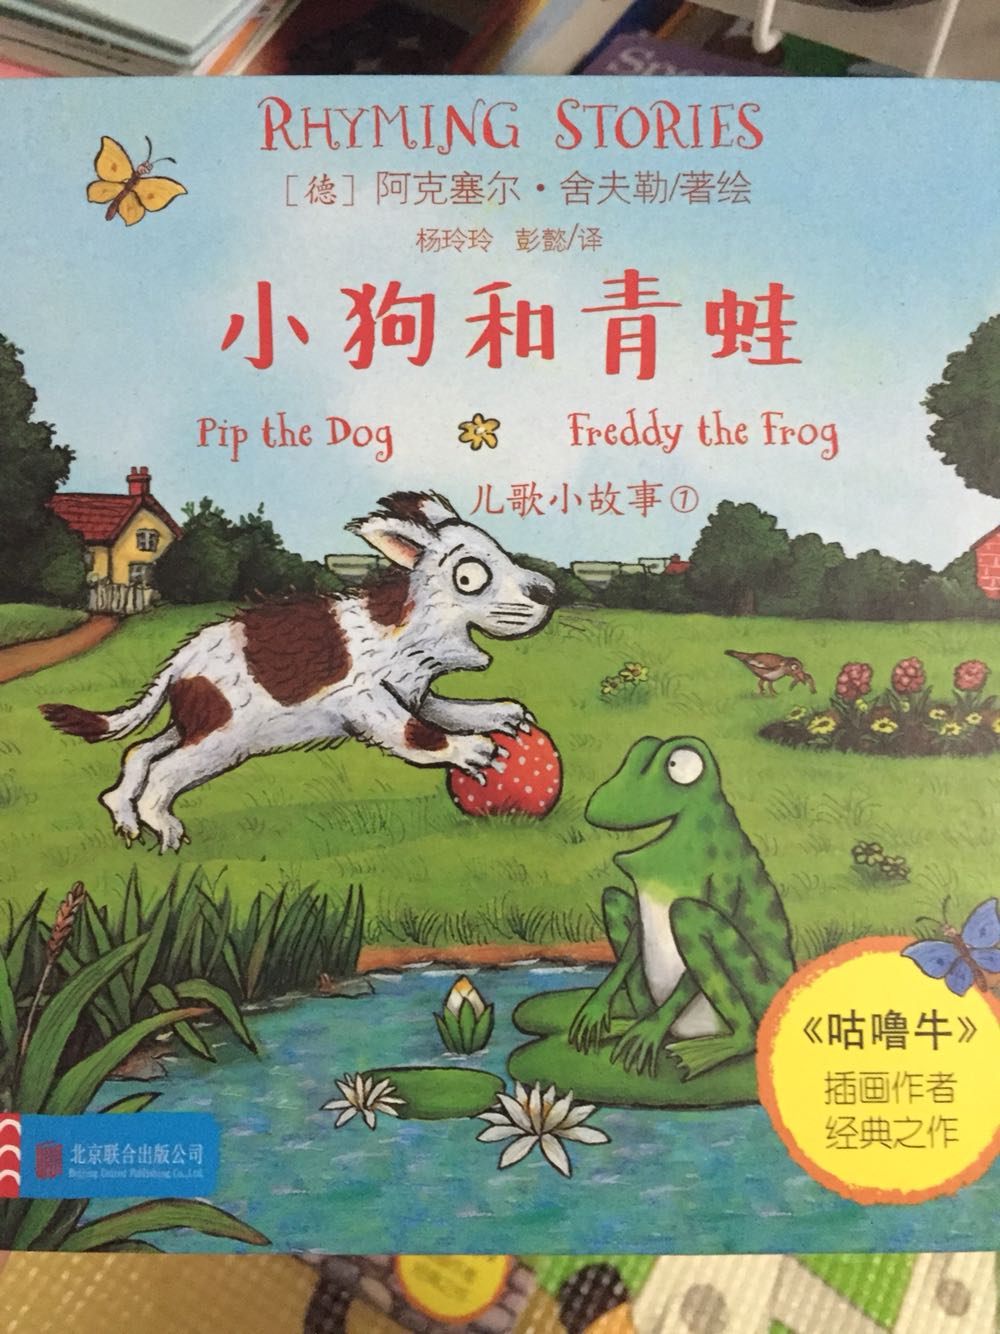 来吧，在这些适合大声朗读的简单儿歌小故事里，跟吵闹的朋友小狗皮普和青蛙弗雷迪凑个热闹吧。说出爱玩耍的这一对都干了什么……吵闹声能停下来吗？明快的色彩，精巧的设计，融儿歌、故事与认知于一体，是学前孩子学习游戏的必备书籍。且《儿歌小故事1：小狗和青蛙》是《咕噜牛》插画师阿克塞尔·舍夫勒的又一经典之作。